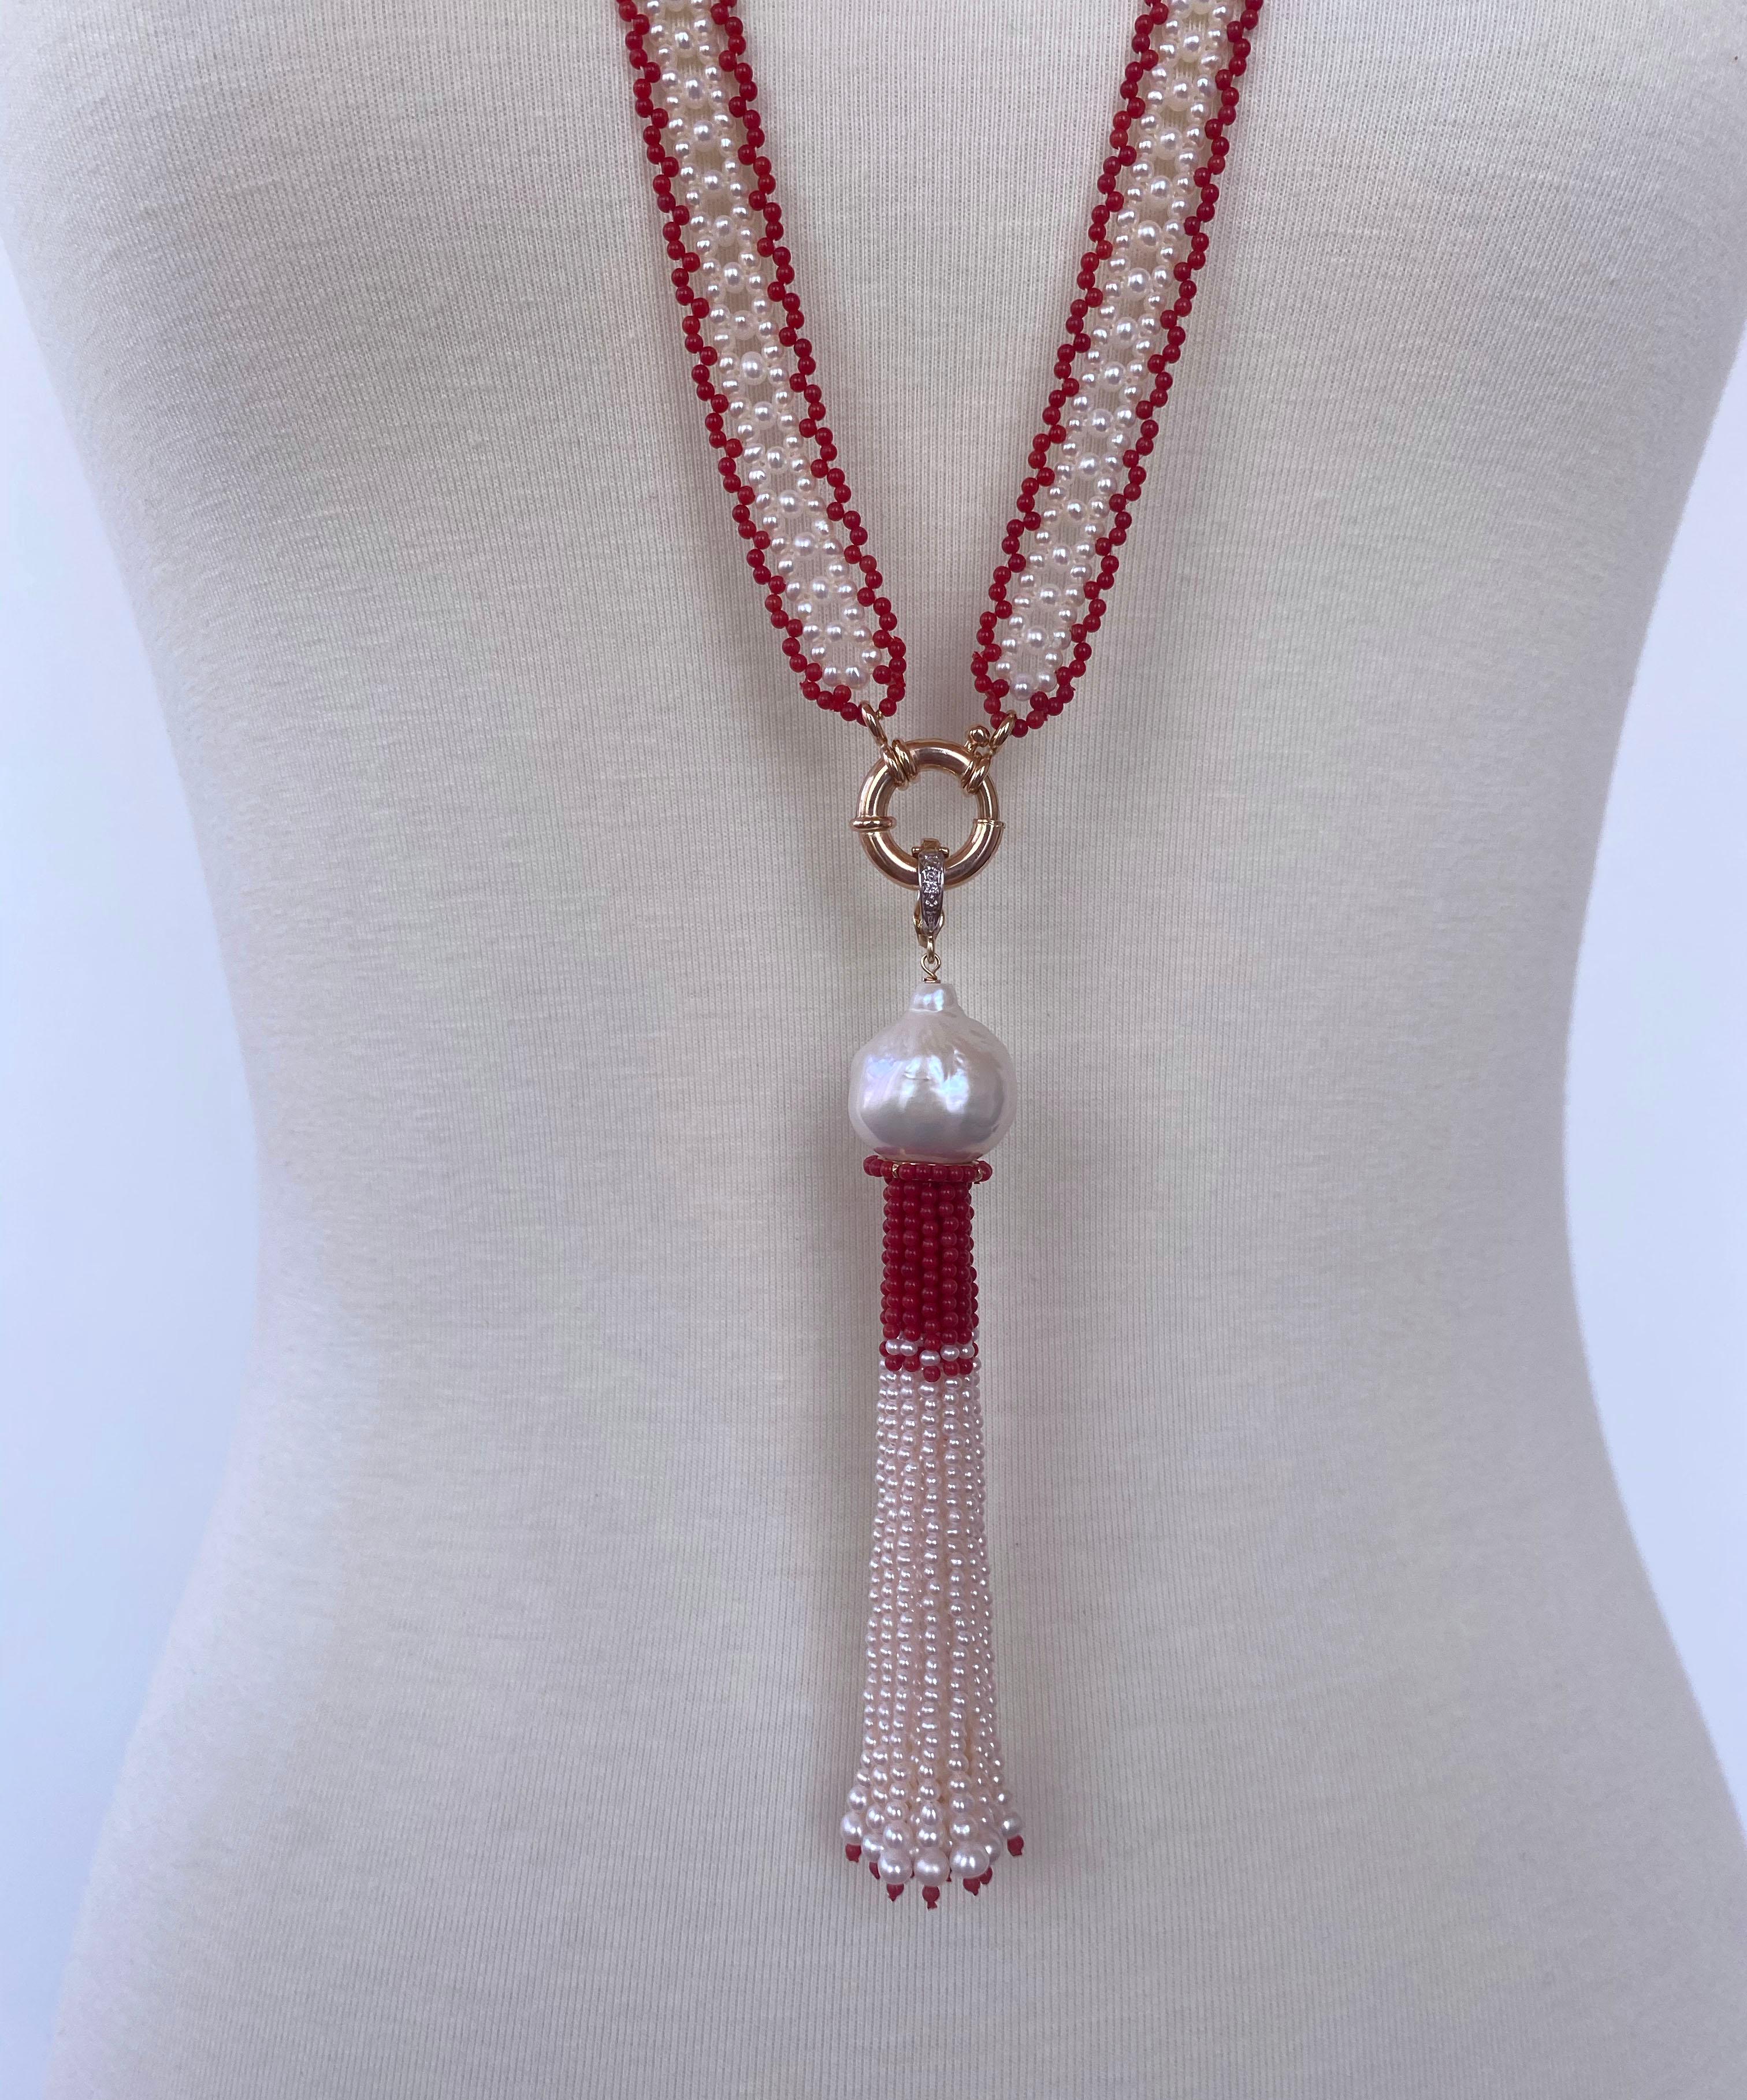 Ein wunderschönes Stück, kunstvoll von Marina J. von Hand gewebt. Dieses vom Art Deco inspirierte Satuoir besteht aus feinen roten Korallenperlen, die mit hochglänzenden weißen Perlen umrandet sind und dem Stück ein erstaunliches, spitzenartiges